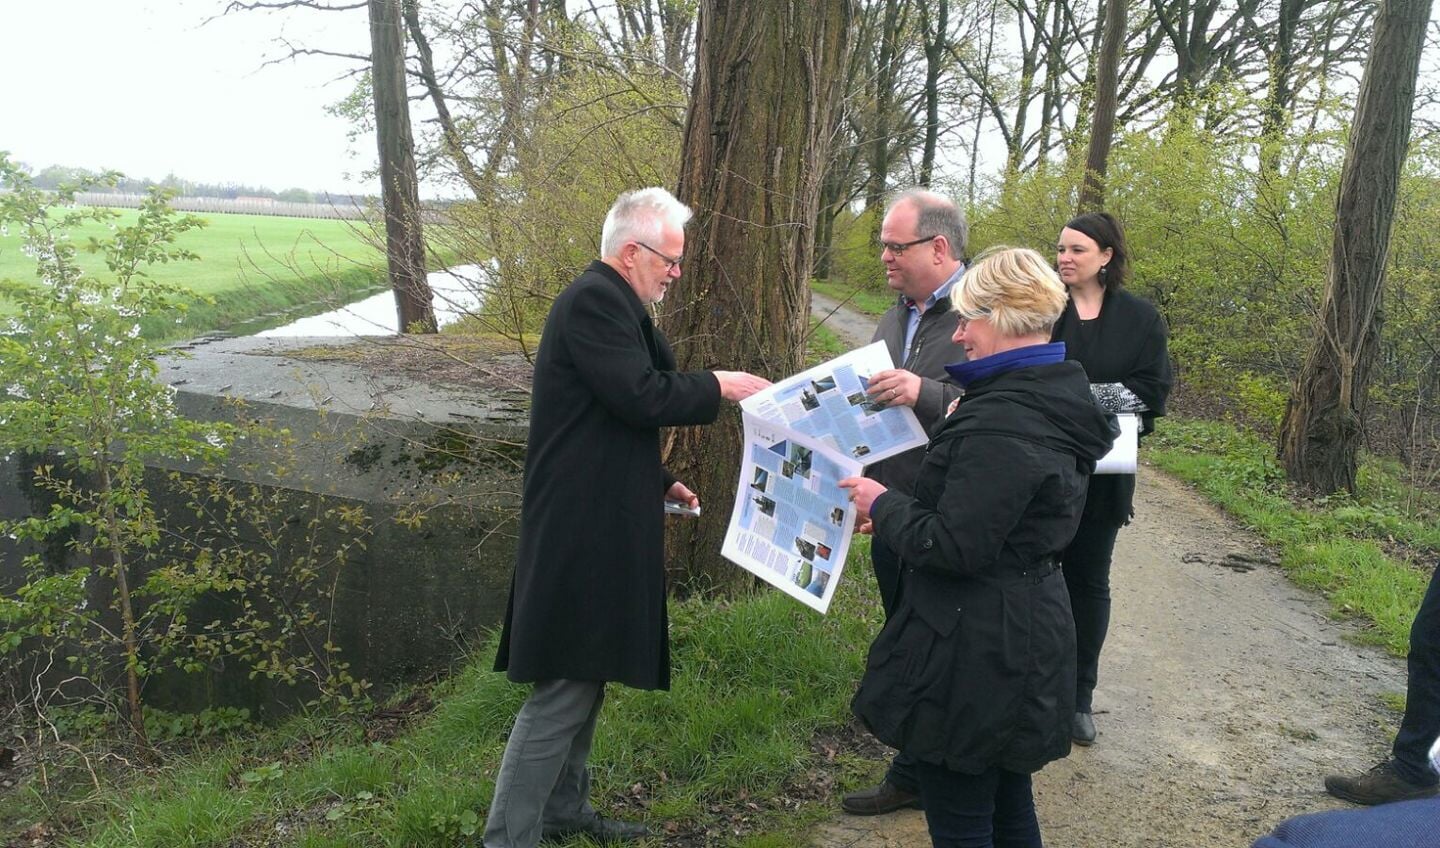 Het project 'Landhorst op Peil', met bijbehorende wandelroute, is in april opgeleverd.